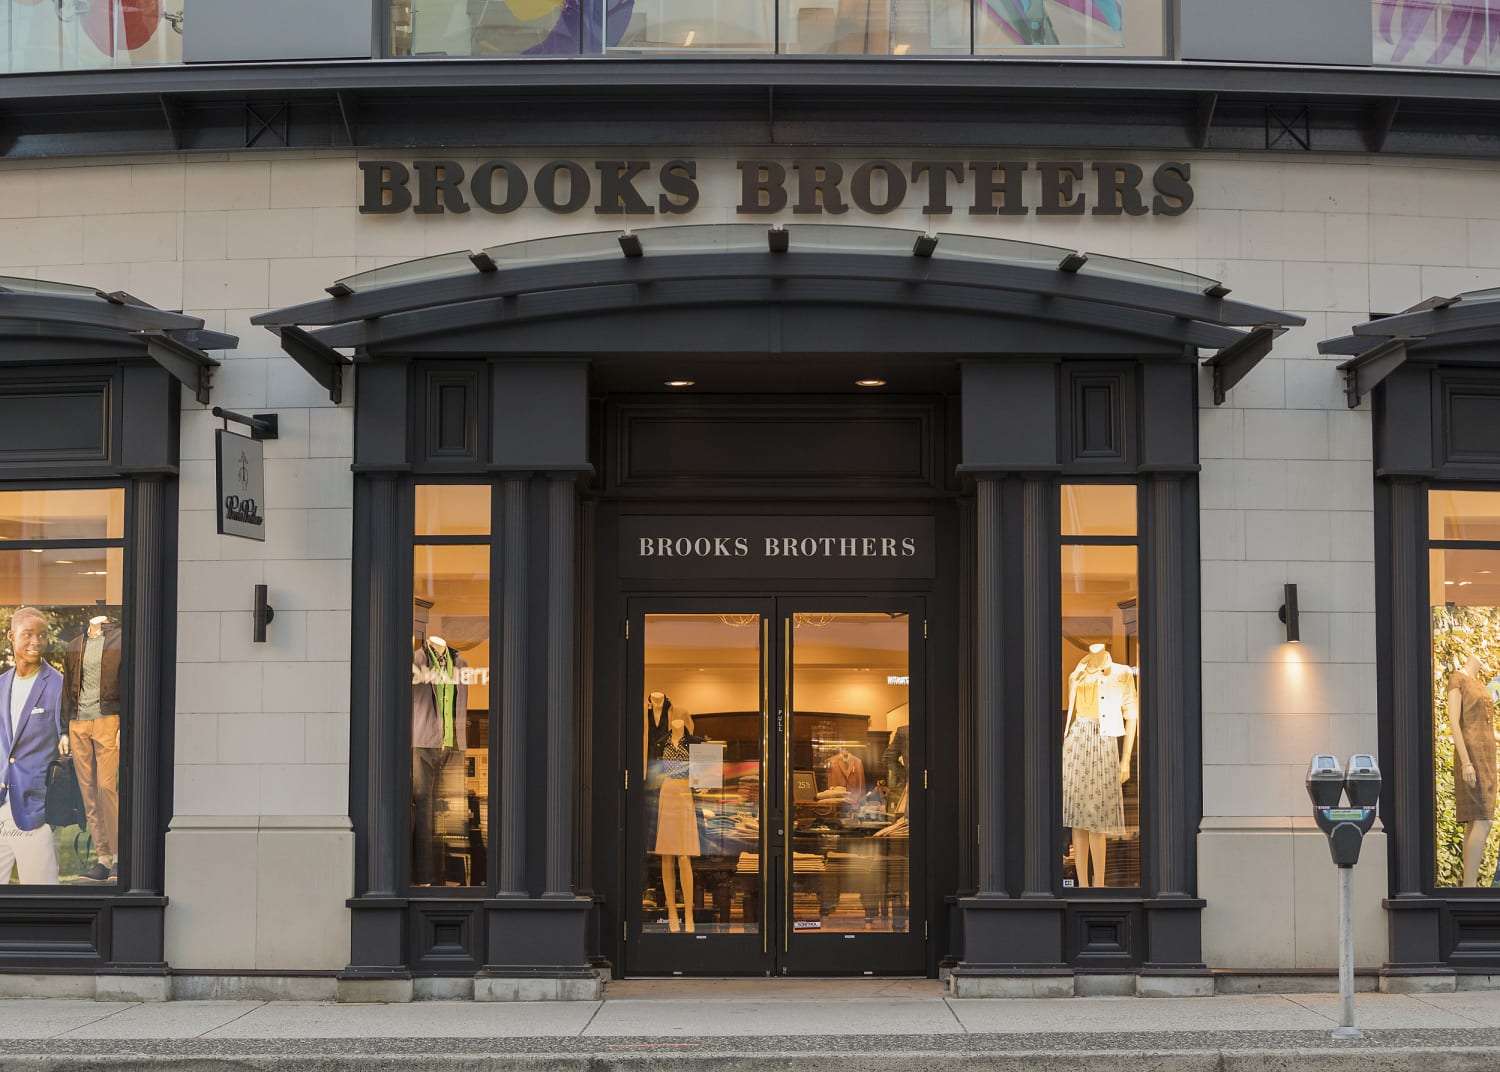 brooks brothers retail